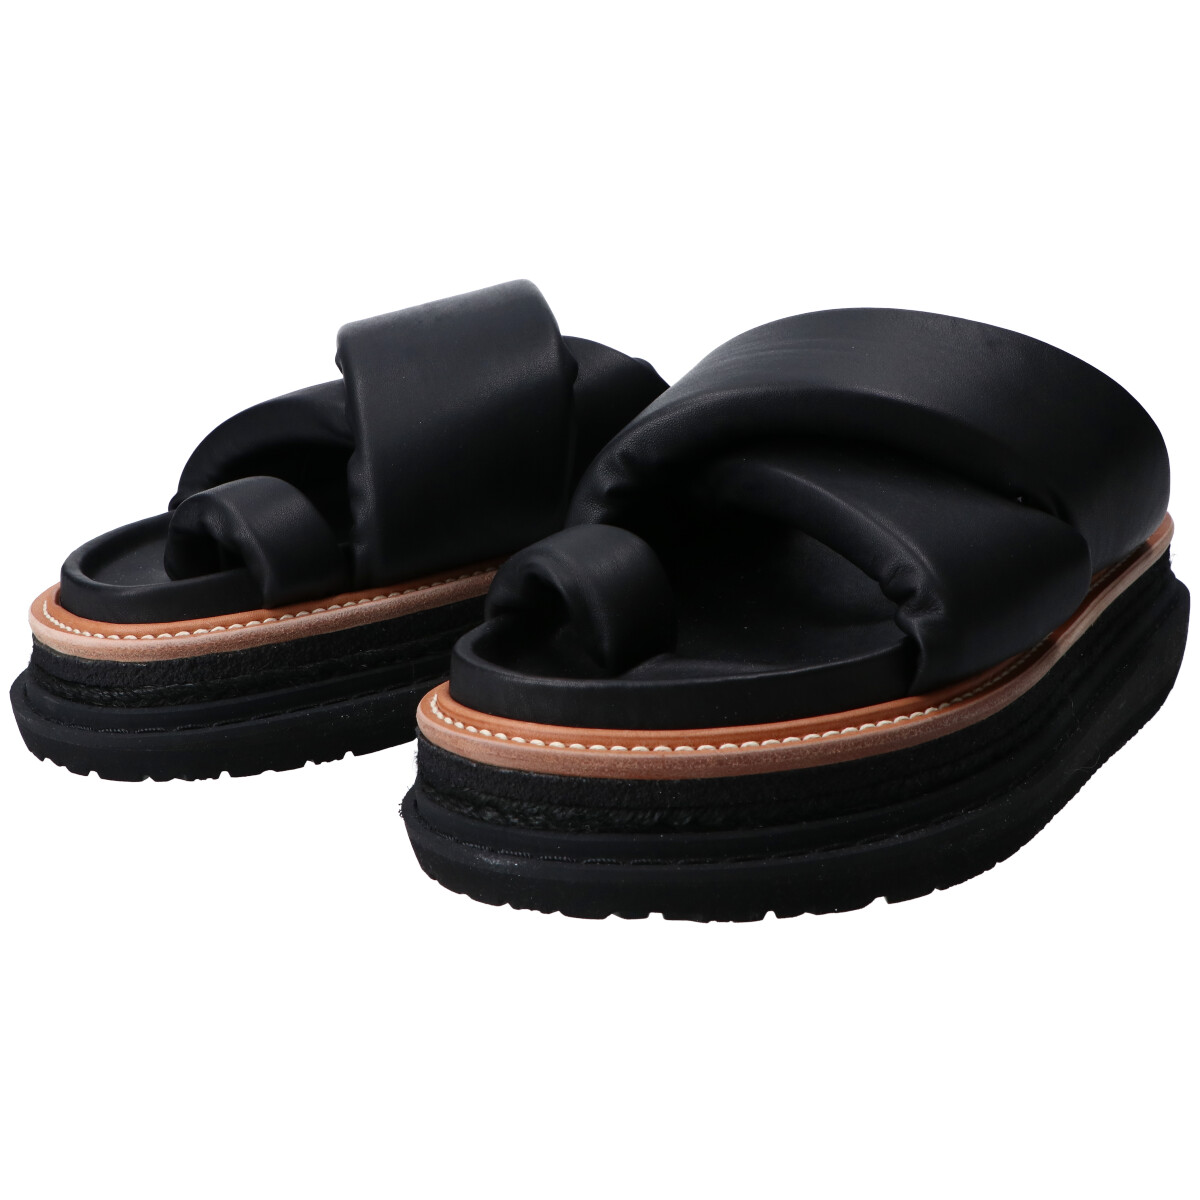 サカイの22-02769M Multiple Sole Sandals メンズの買取実績です。